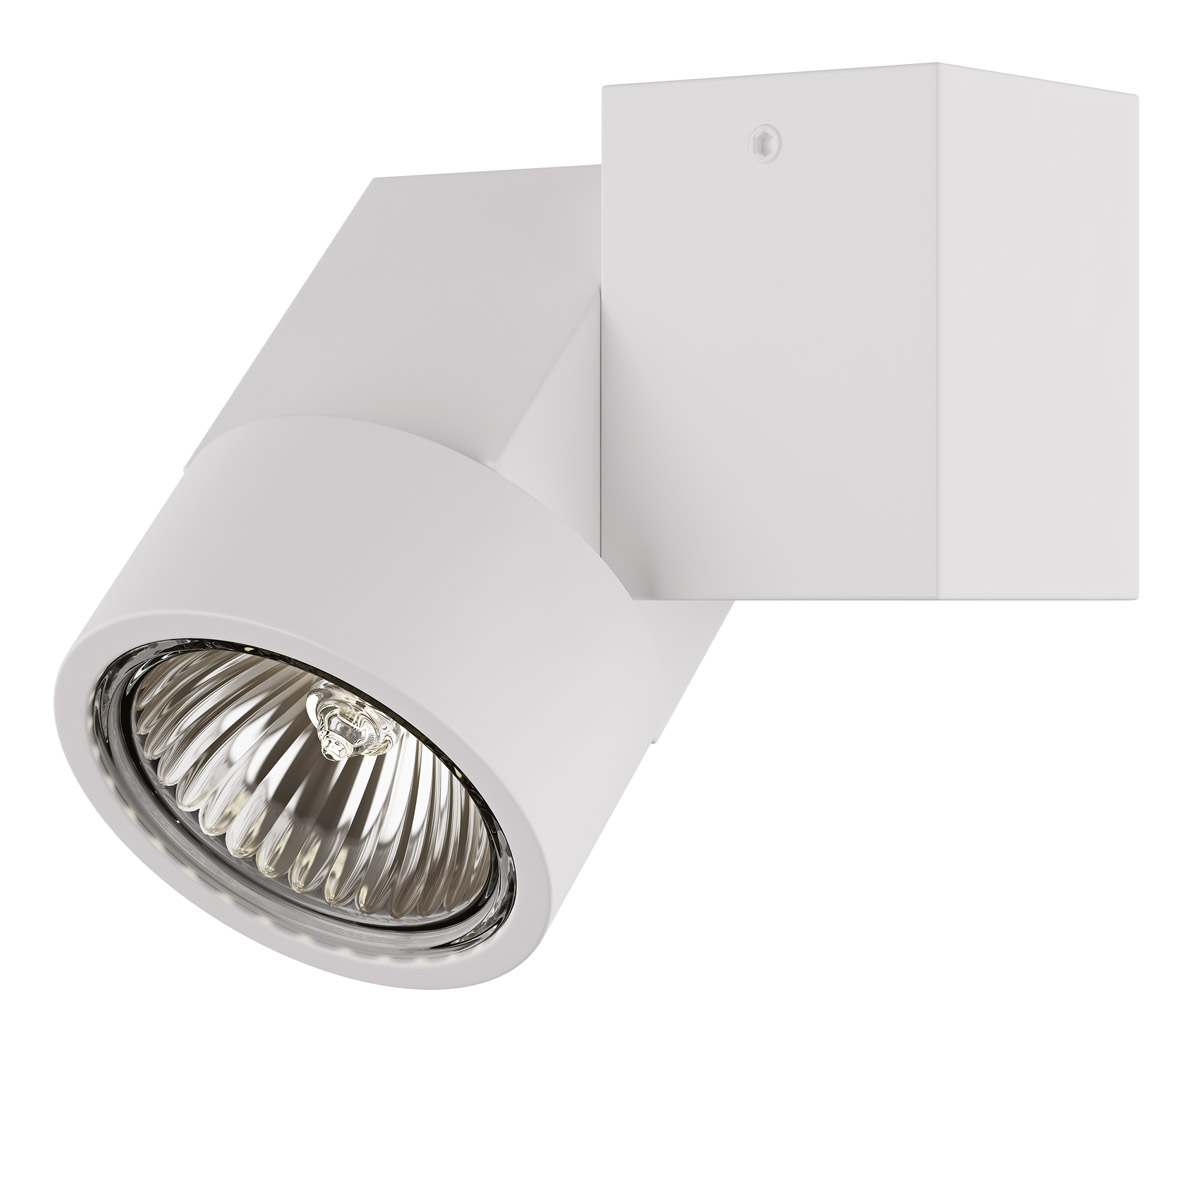 Светильник точечный накладной декоративный под заменяемые ГЛН или LED лампы Lightstar 051026 Illumo X1